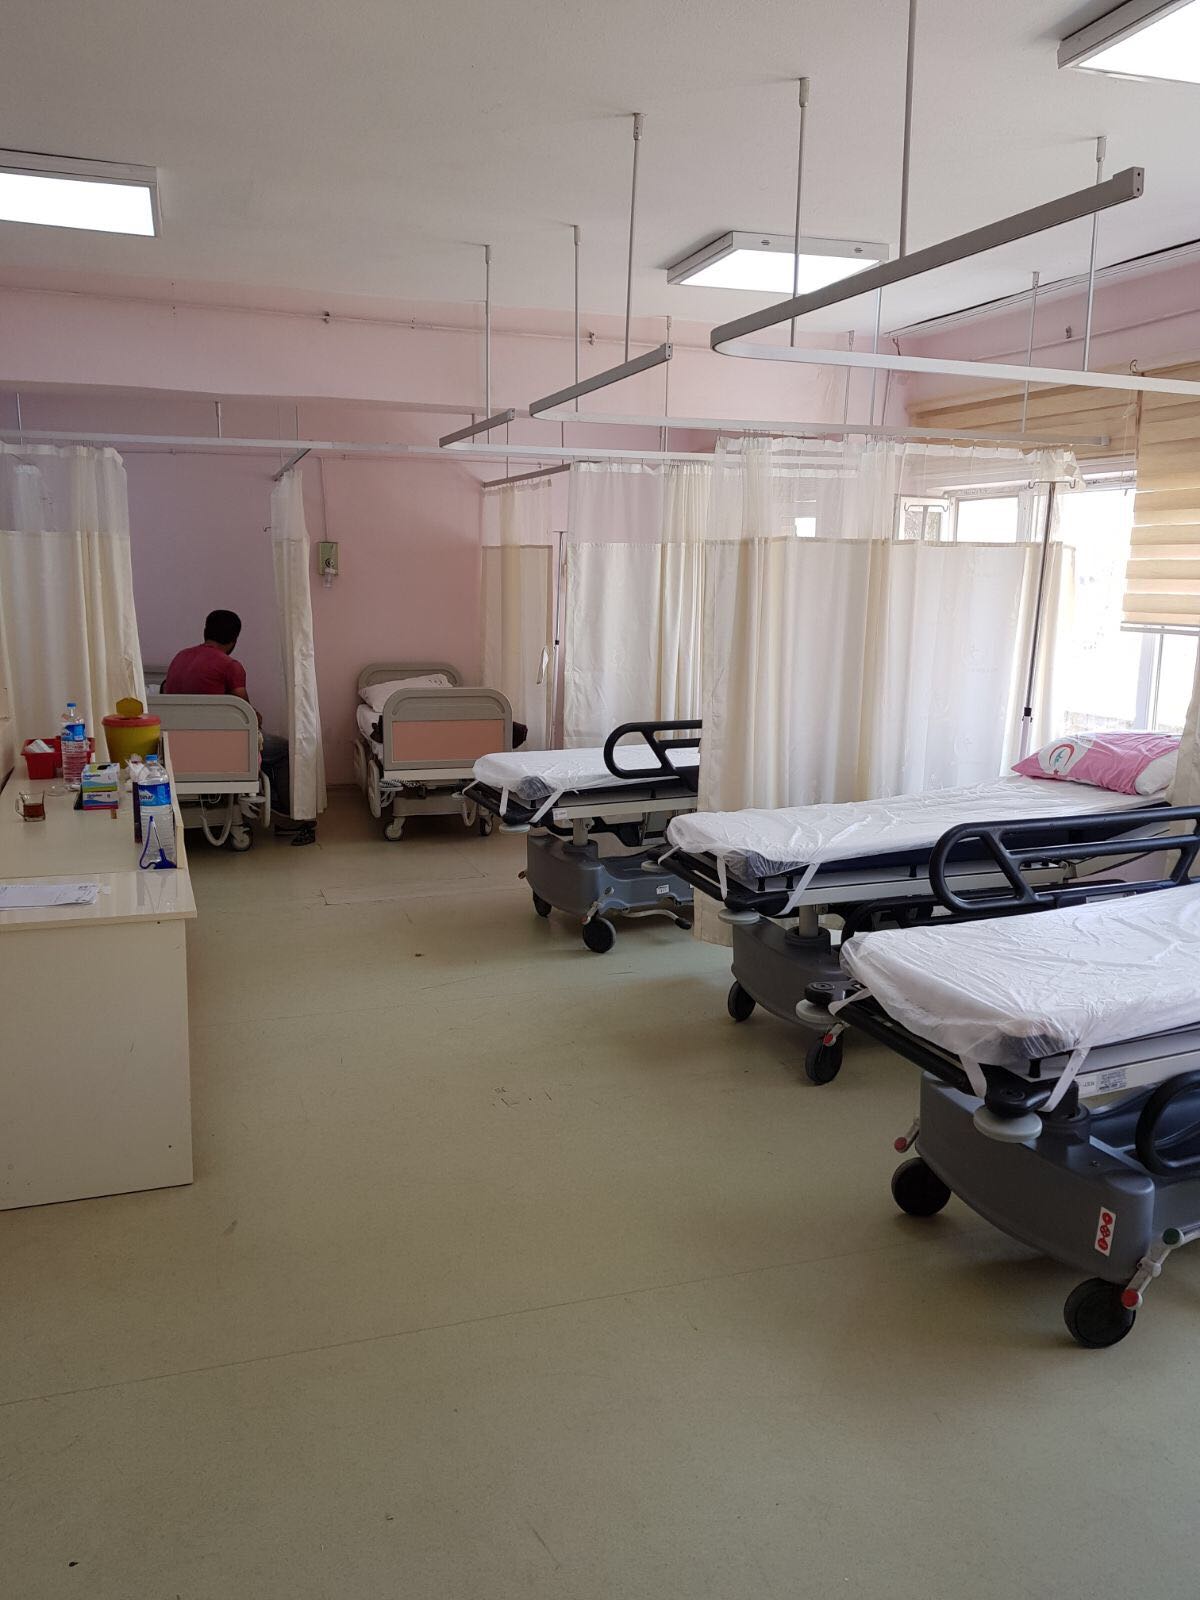 Tatvan ilçe merkezinde bulunan Tatvan Devlet Hastanesi ek hizmet binasında fizik tedavi ünitesi, ağız diş ünitesi ve acil servisiyle hastane binasında sağlık hizmeti vermeye başladı.